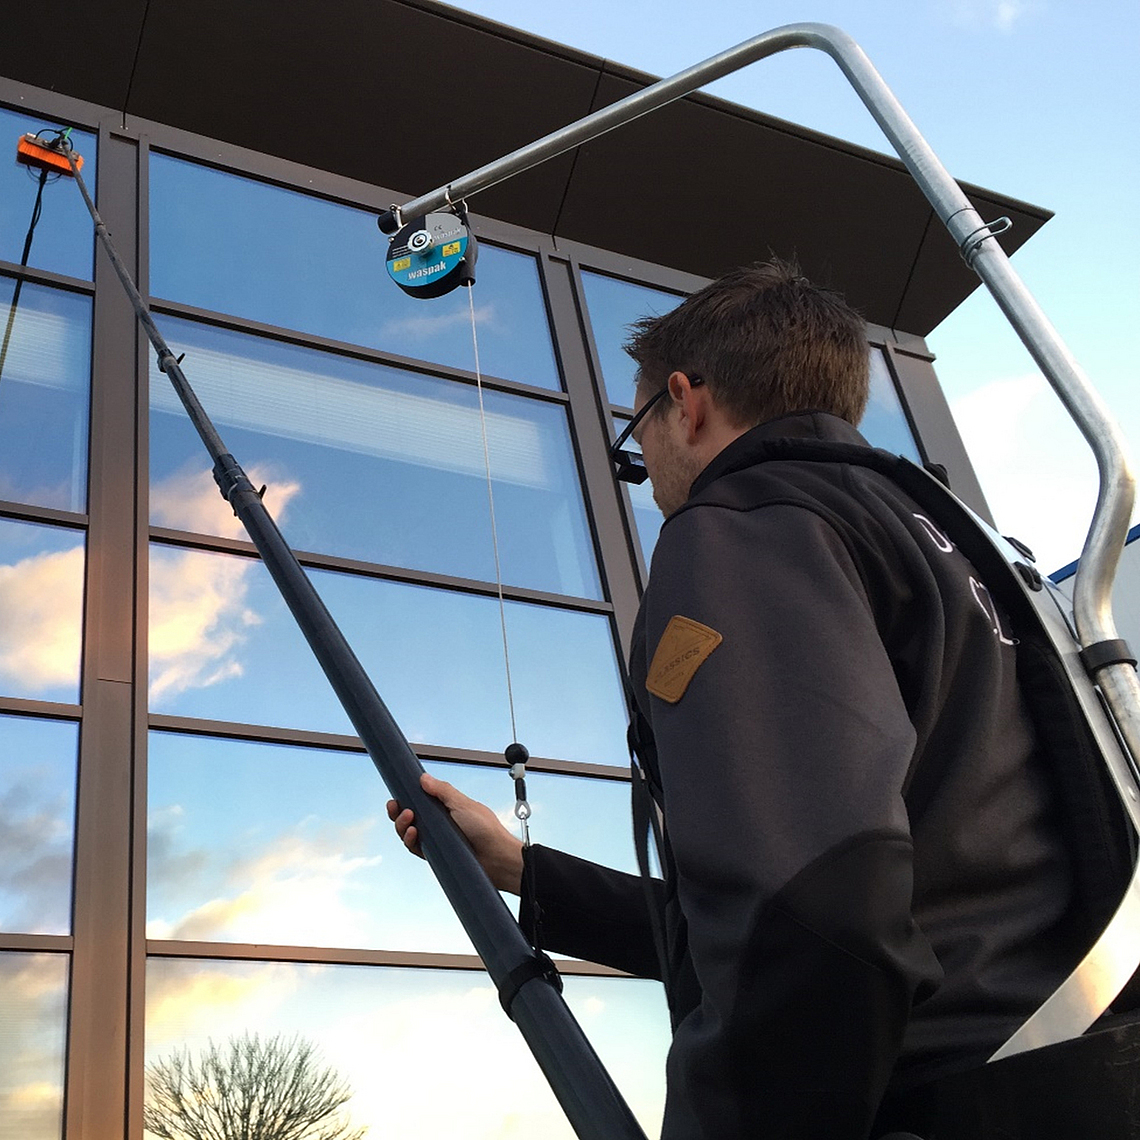 Ein Beschäftigter reinigt Fensterflächen mit einer Teleskopstange mit Bürstenaufsatz, die von einem Rucksacksystem gestützt wird.
